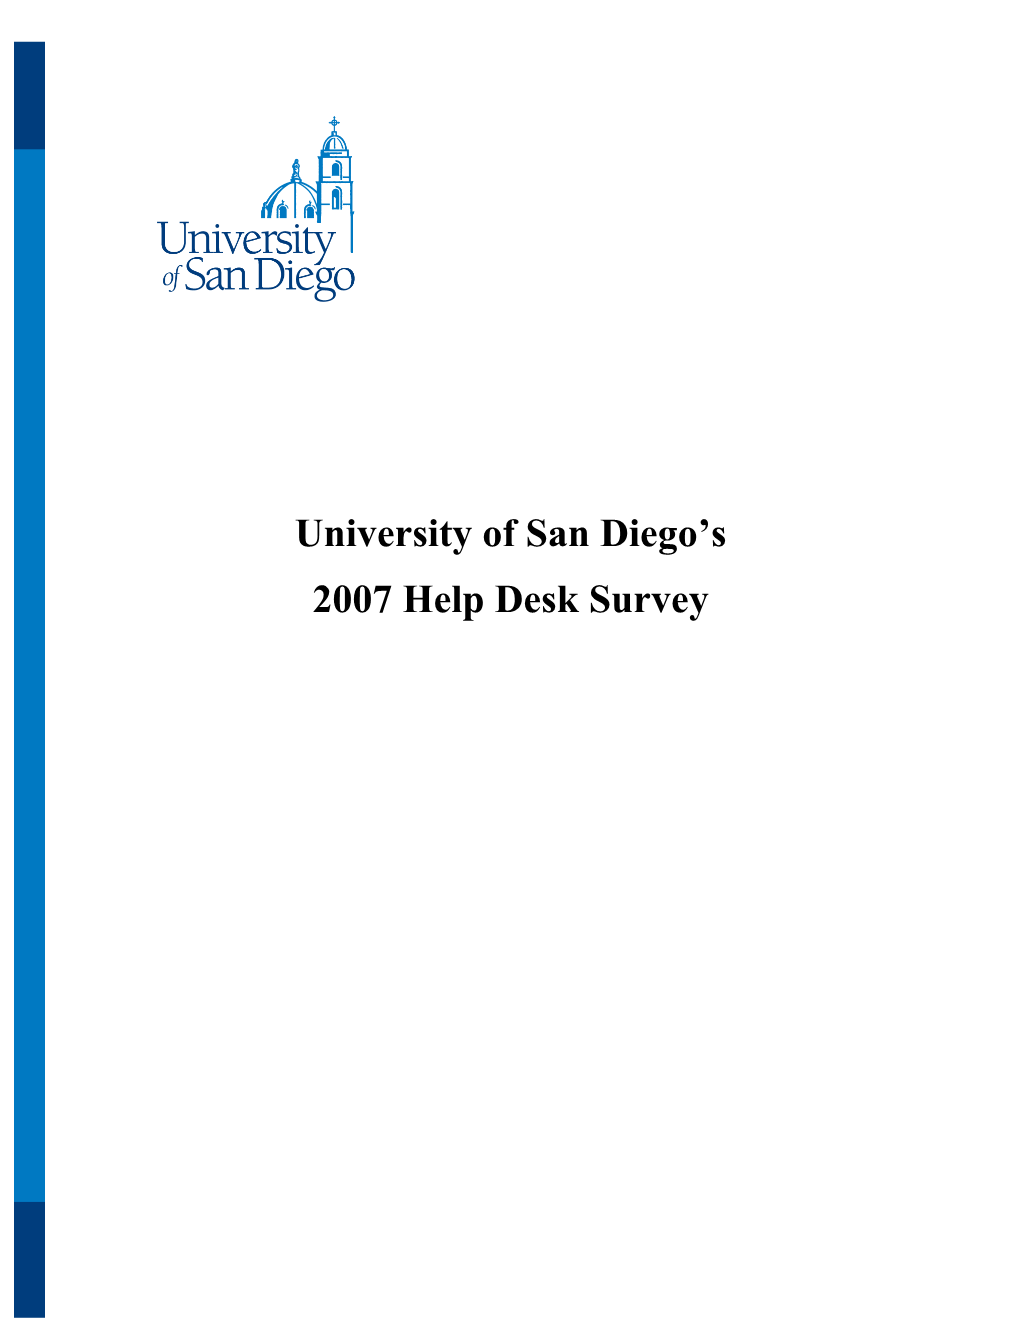 2007 Help Desk Survey